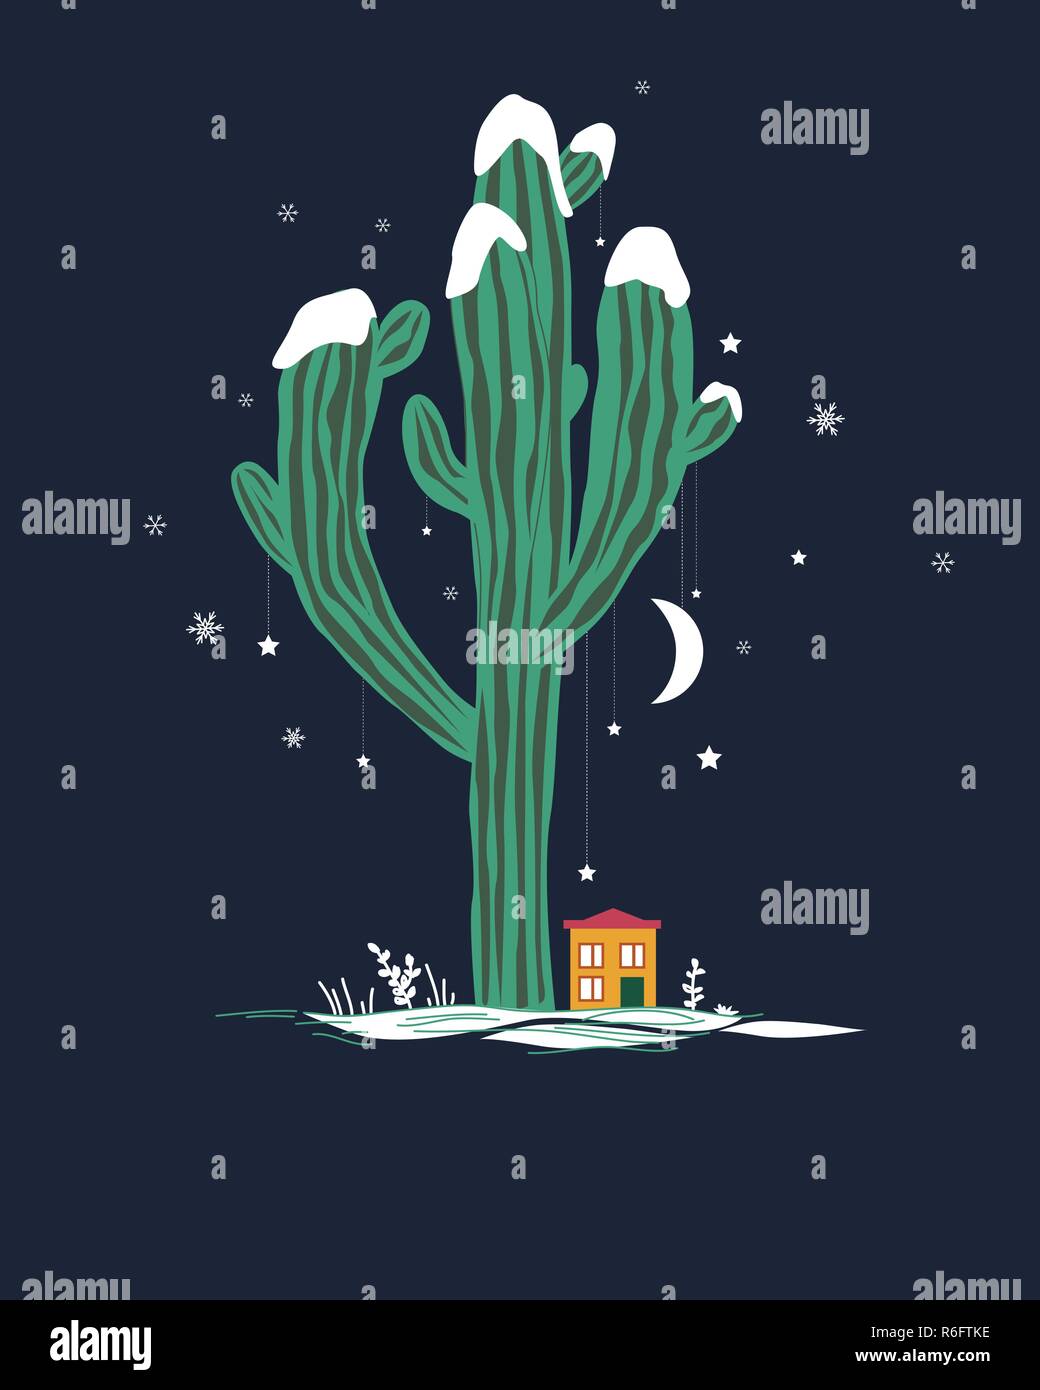 Cute Cartoon Illustration mit hohen Saguaro Kakteen und kleinen Haus. Mexikanische fairy Winterlandschaft, Weihnachtskarte. Stock Vektor